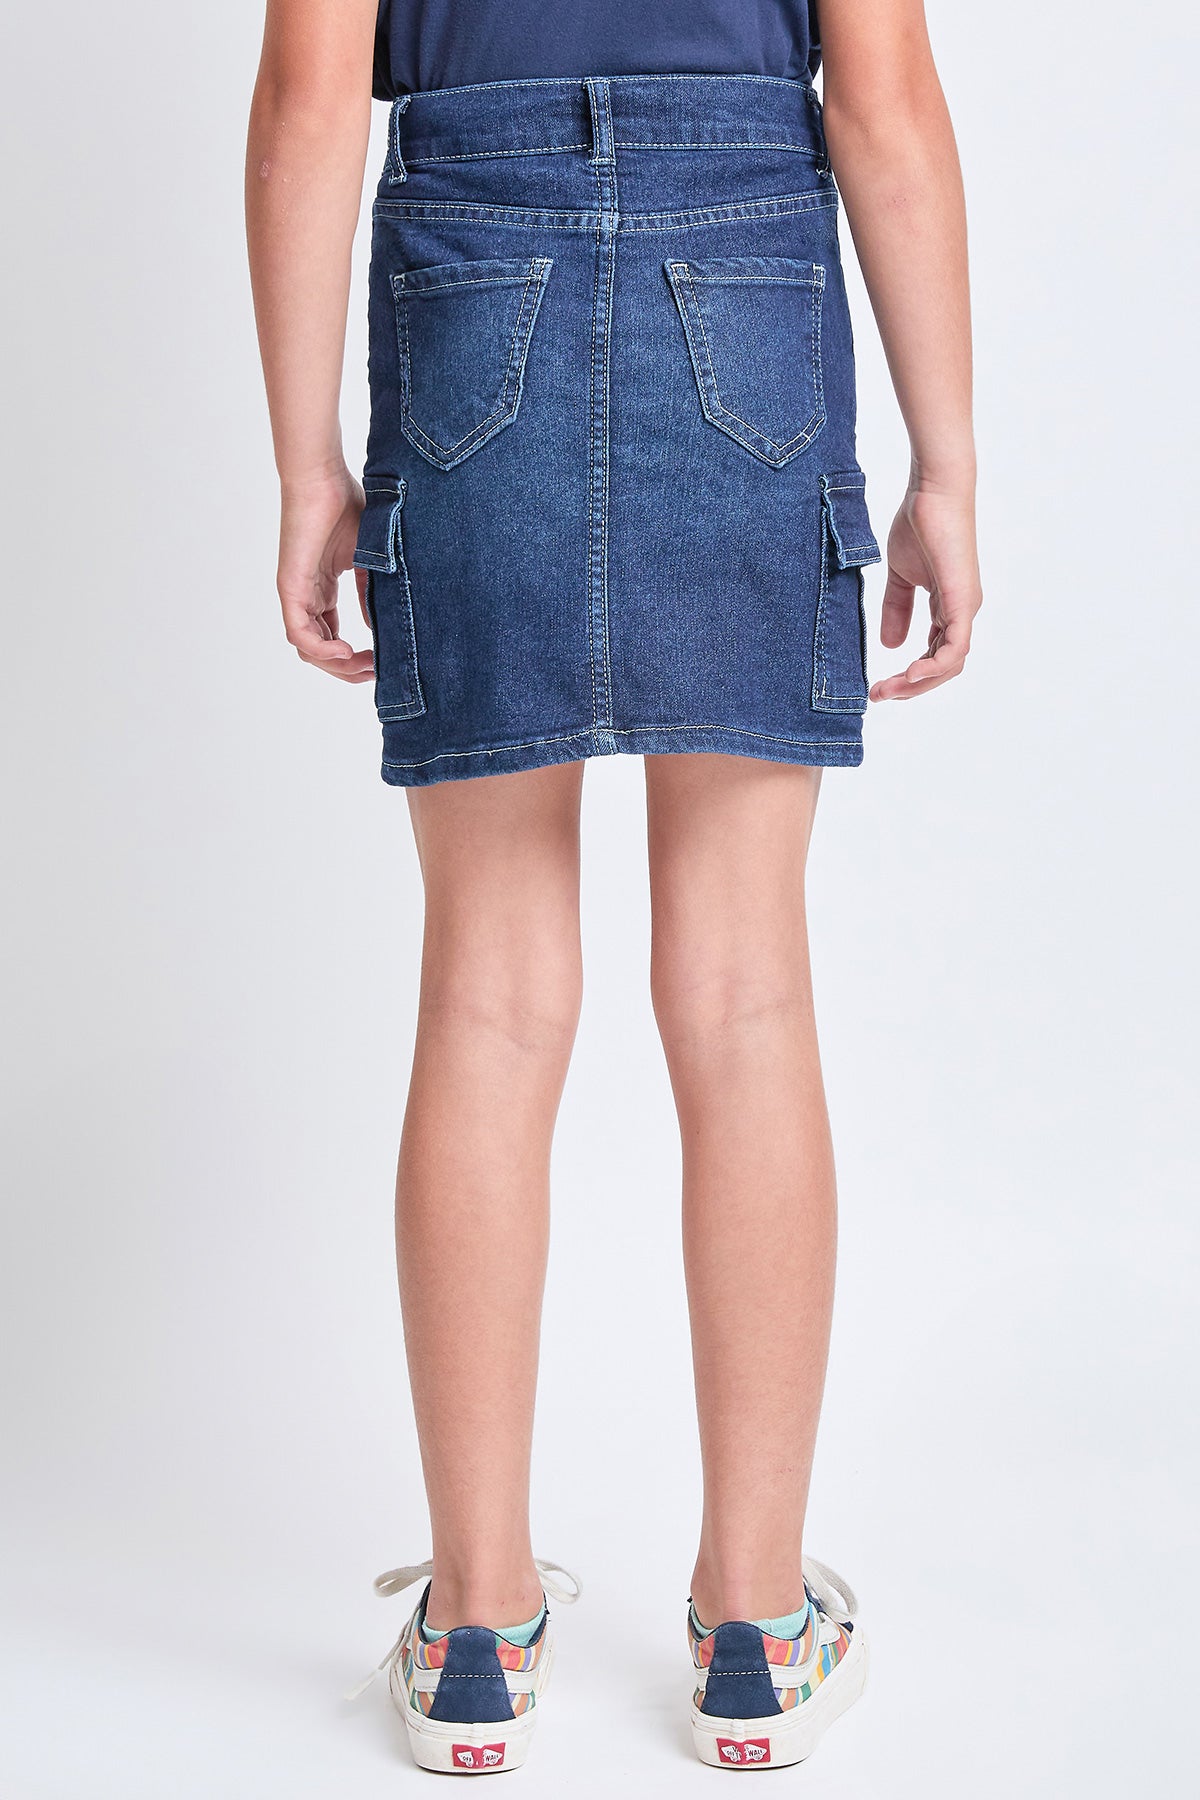 Girls Cargo Pocket Denim Skirt, Pack of 12